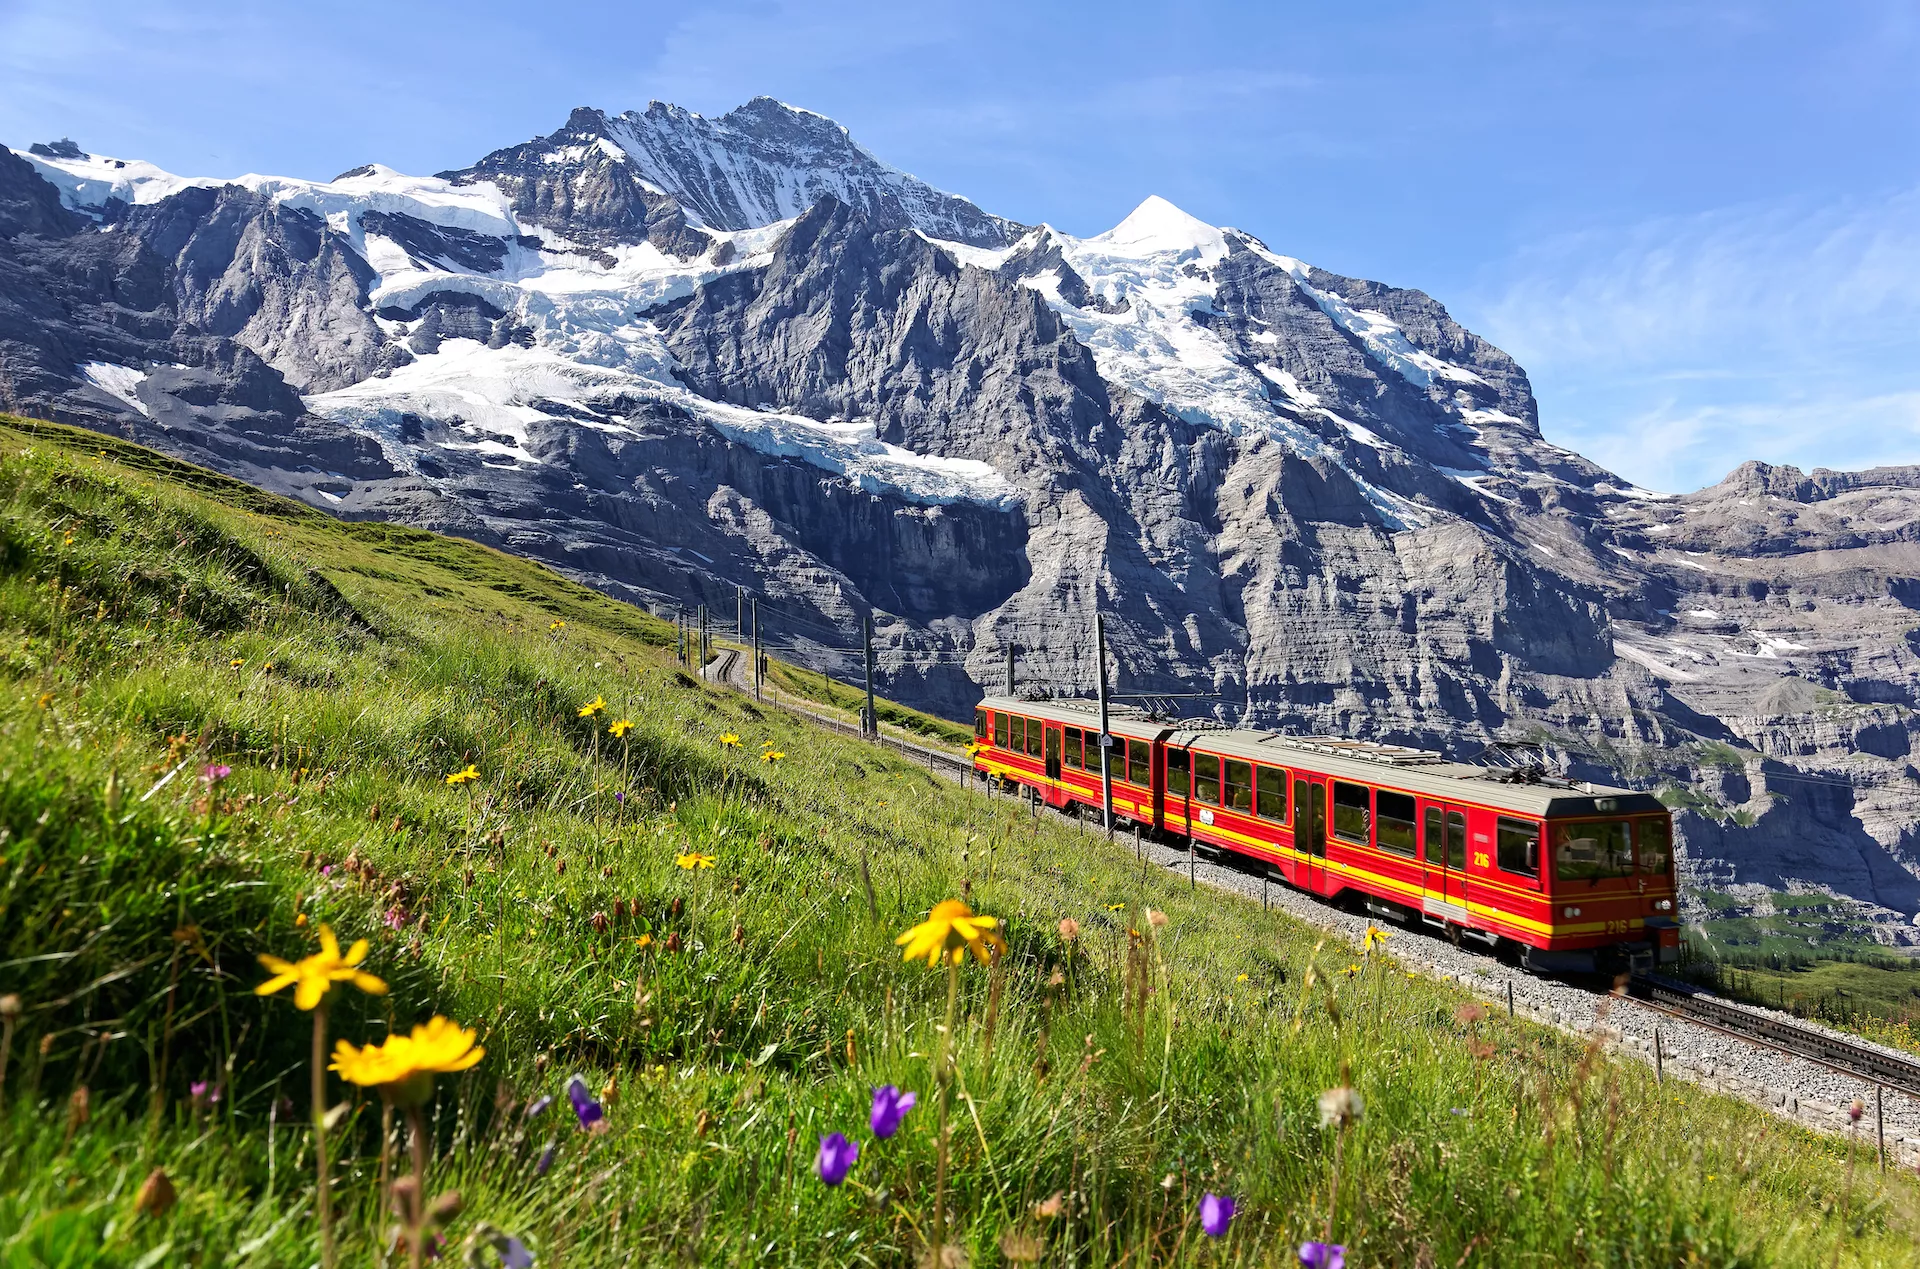 Un train touristique circule sur le chemin de fer de la Jungfrau entre Jungfraujoch et Kleine Scheidegg.